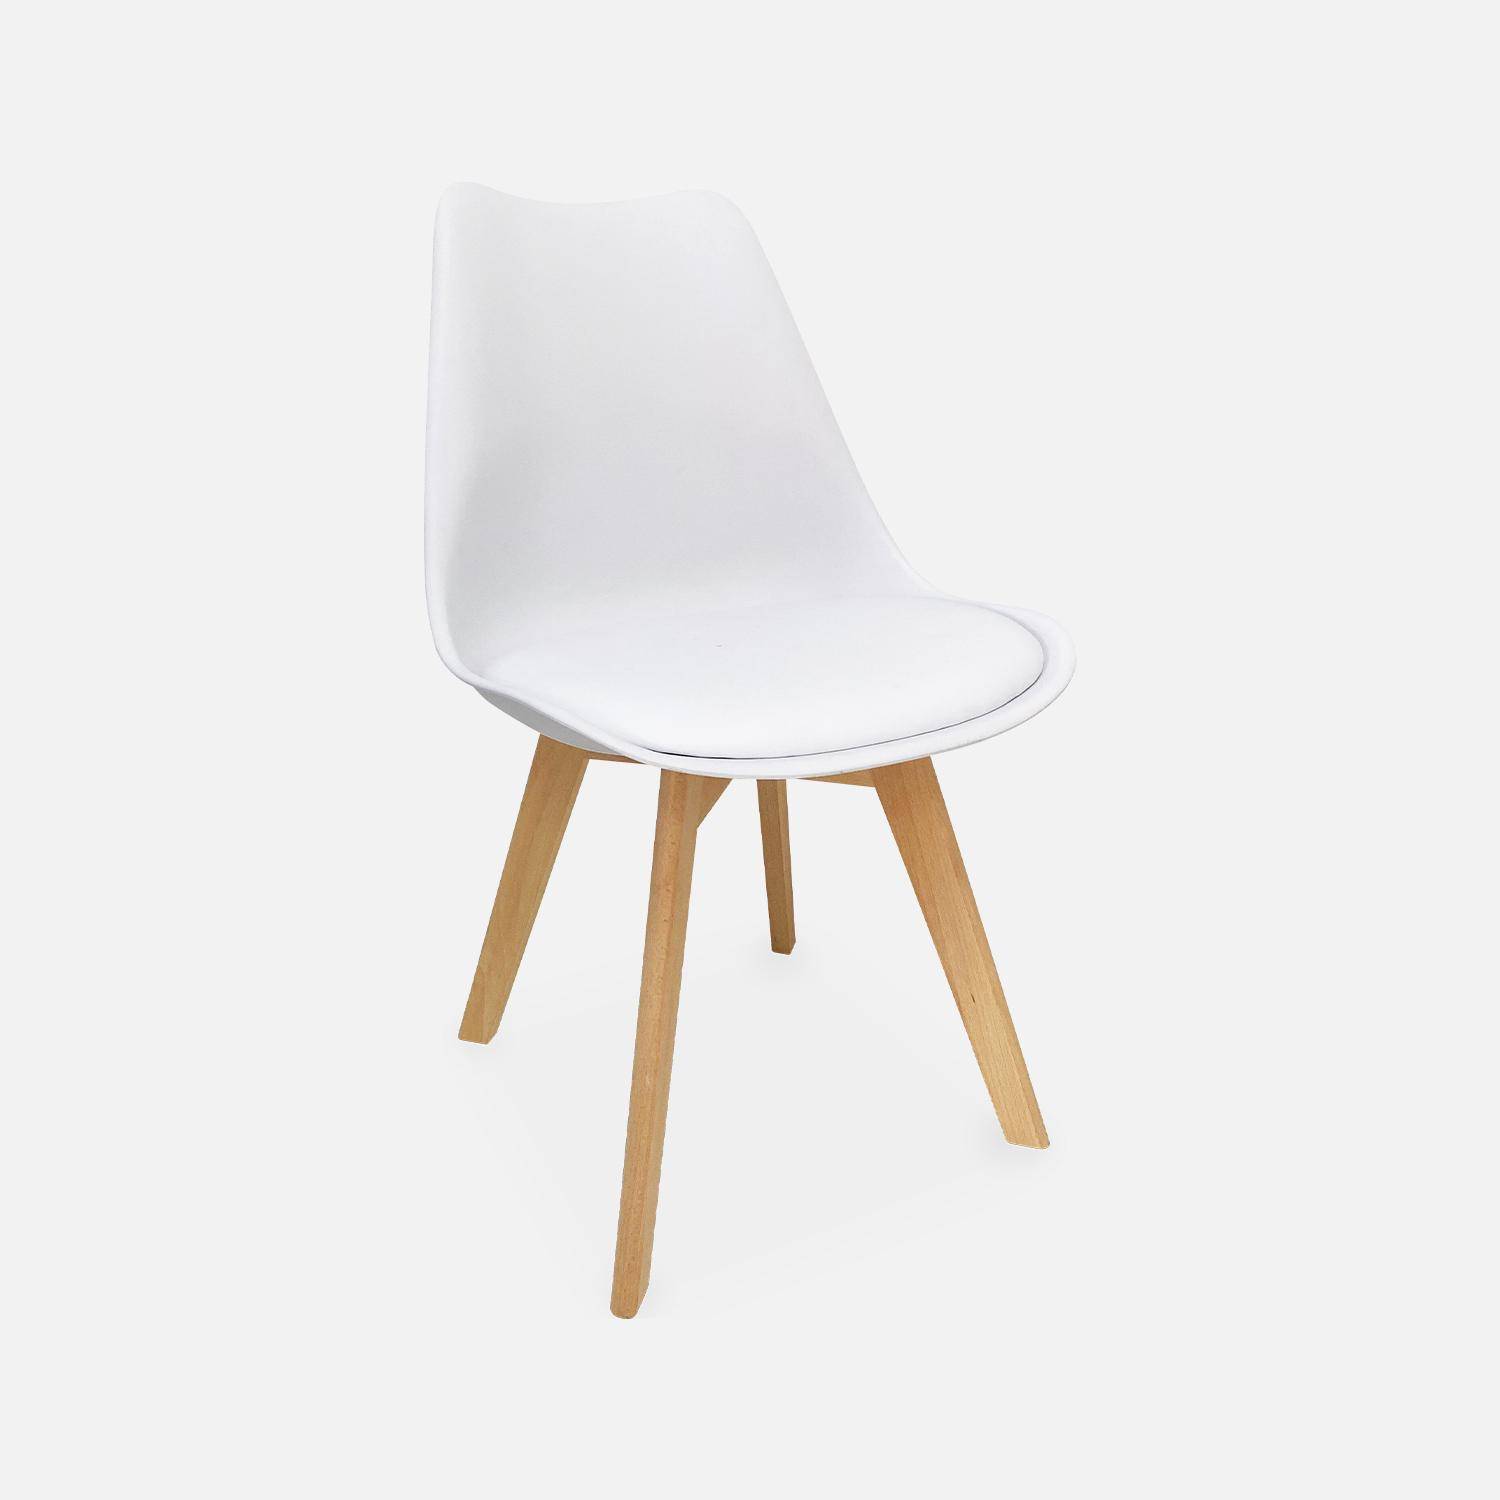 Juego de 6 sillas escandinavas, patas de madera de haya, monoplaza, blanco Photo5